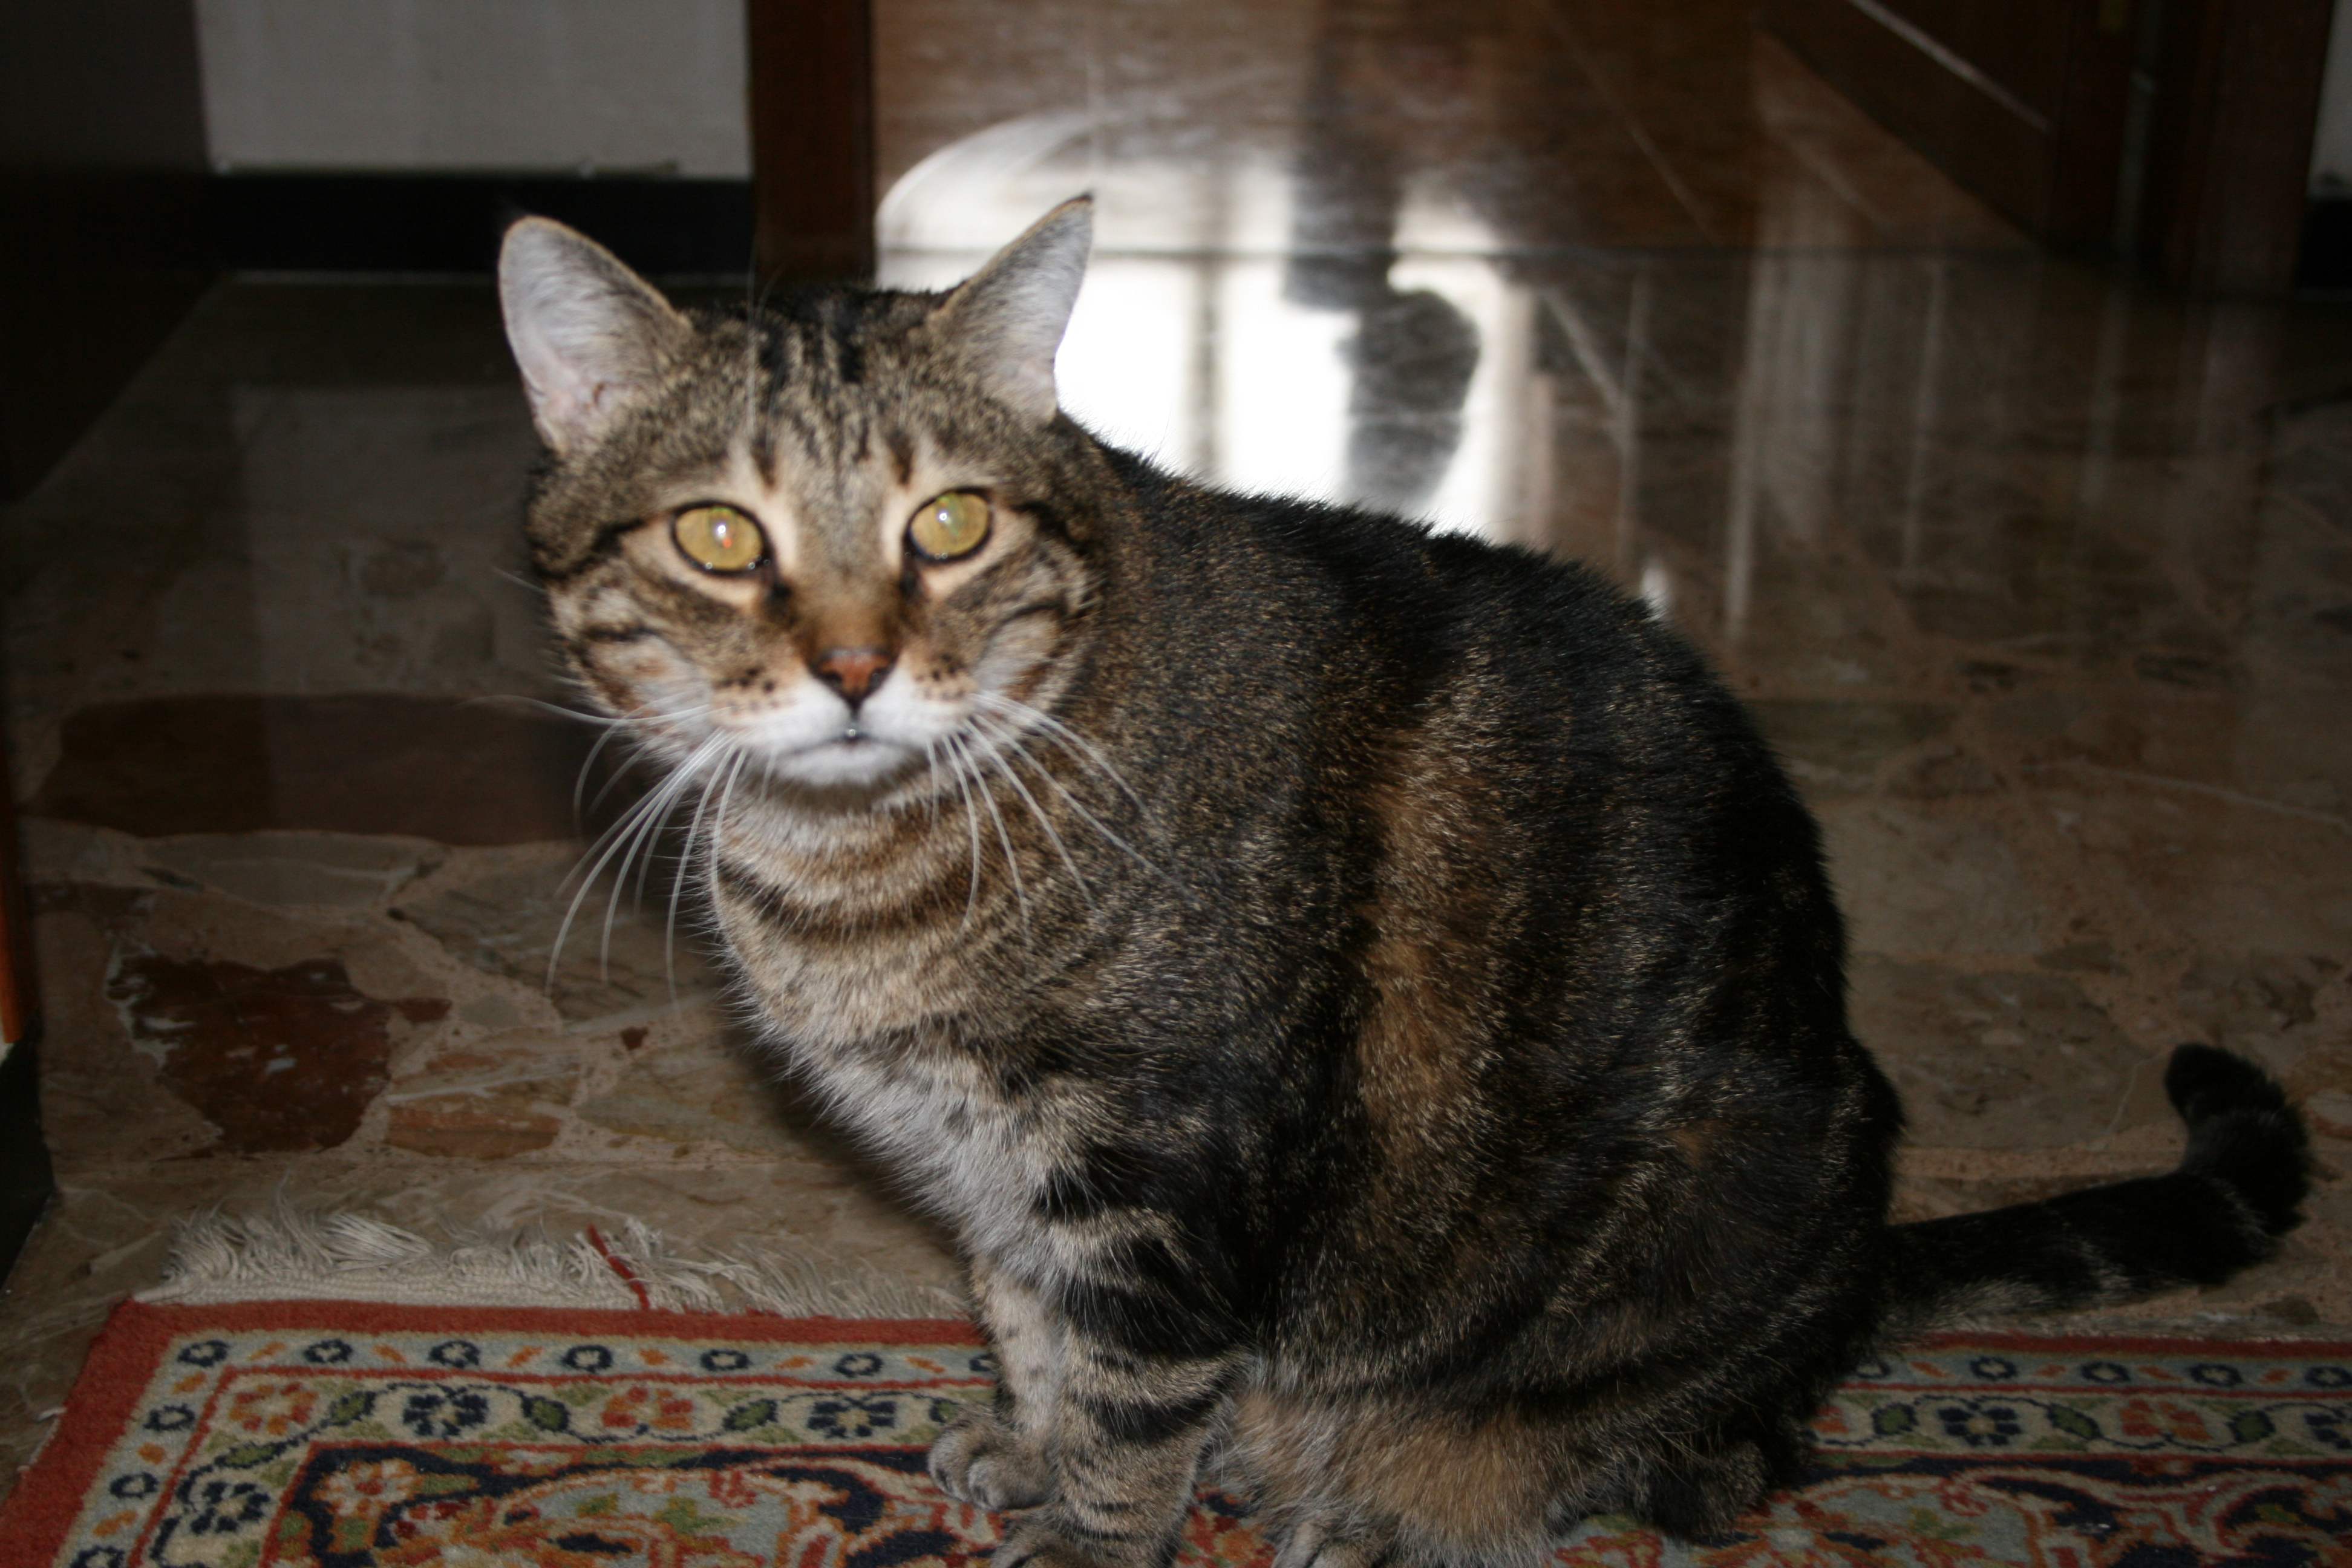 Cattura un gatto con una trappola rudimentale: denunciato 19enne per maltrattamento di animali